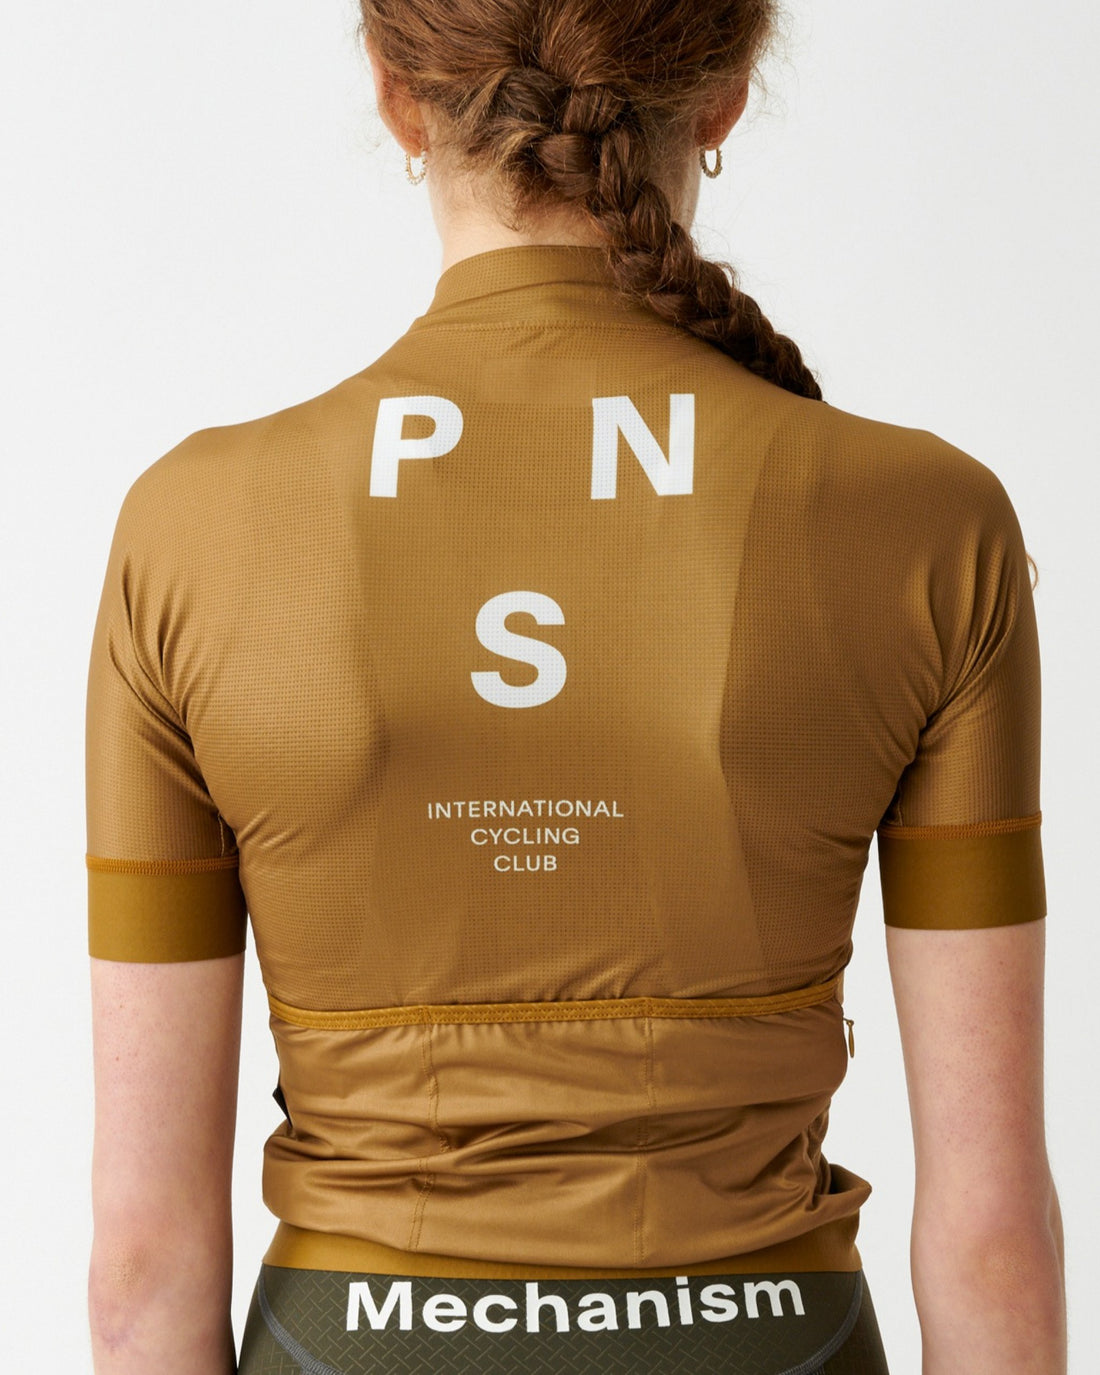 PNS Women's Mechanism Jersey